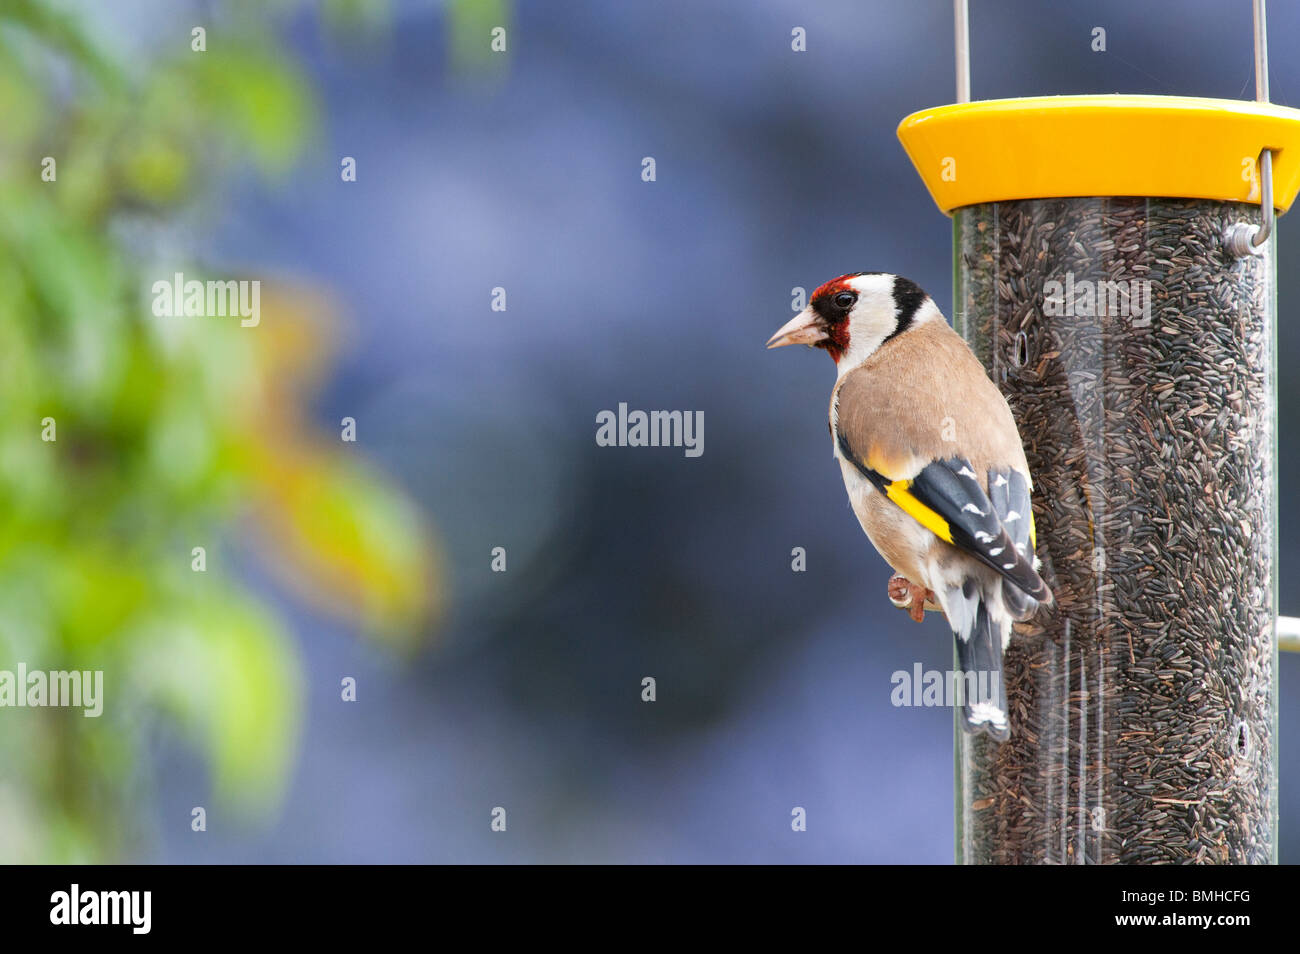 Cardellino su un uccello nyjer alimentatore di semi in un giardino Foto Stock